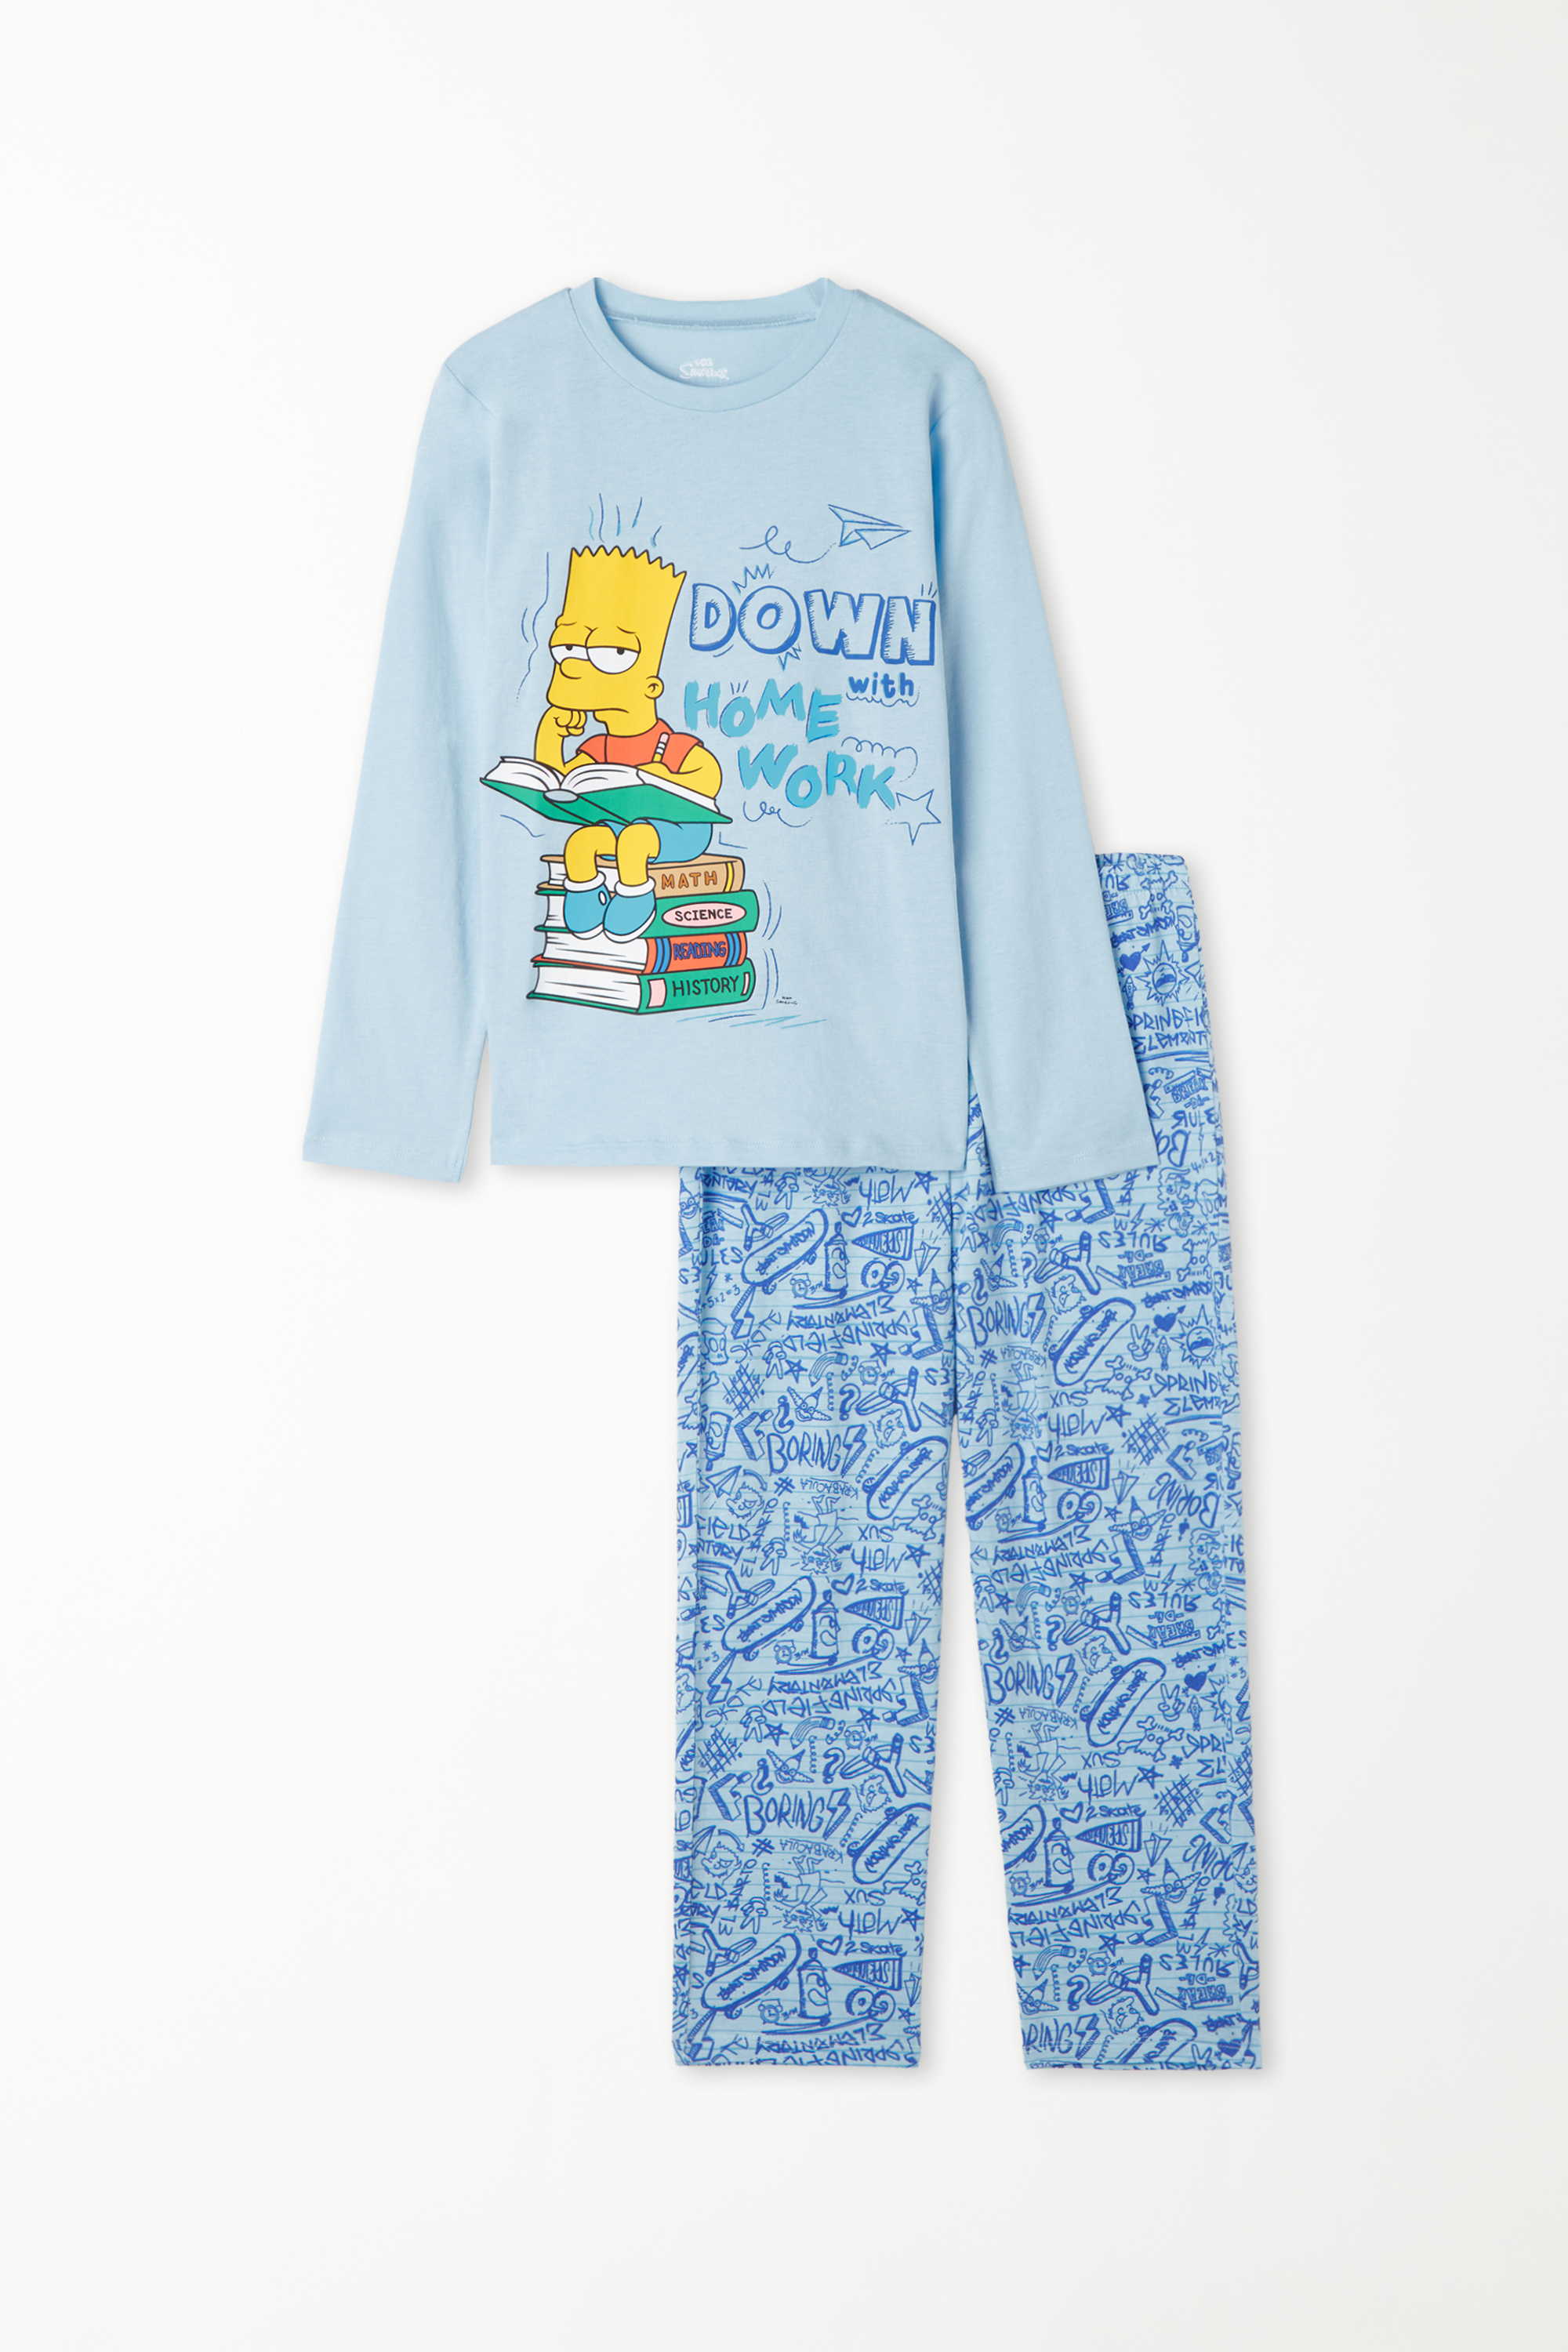 The Simpsons Print Long Pyjamas